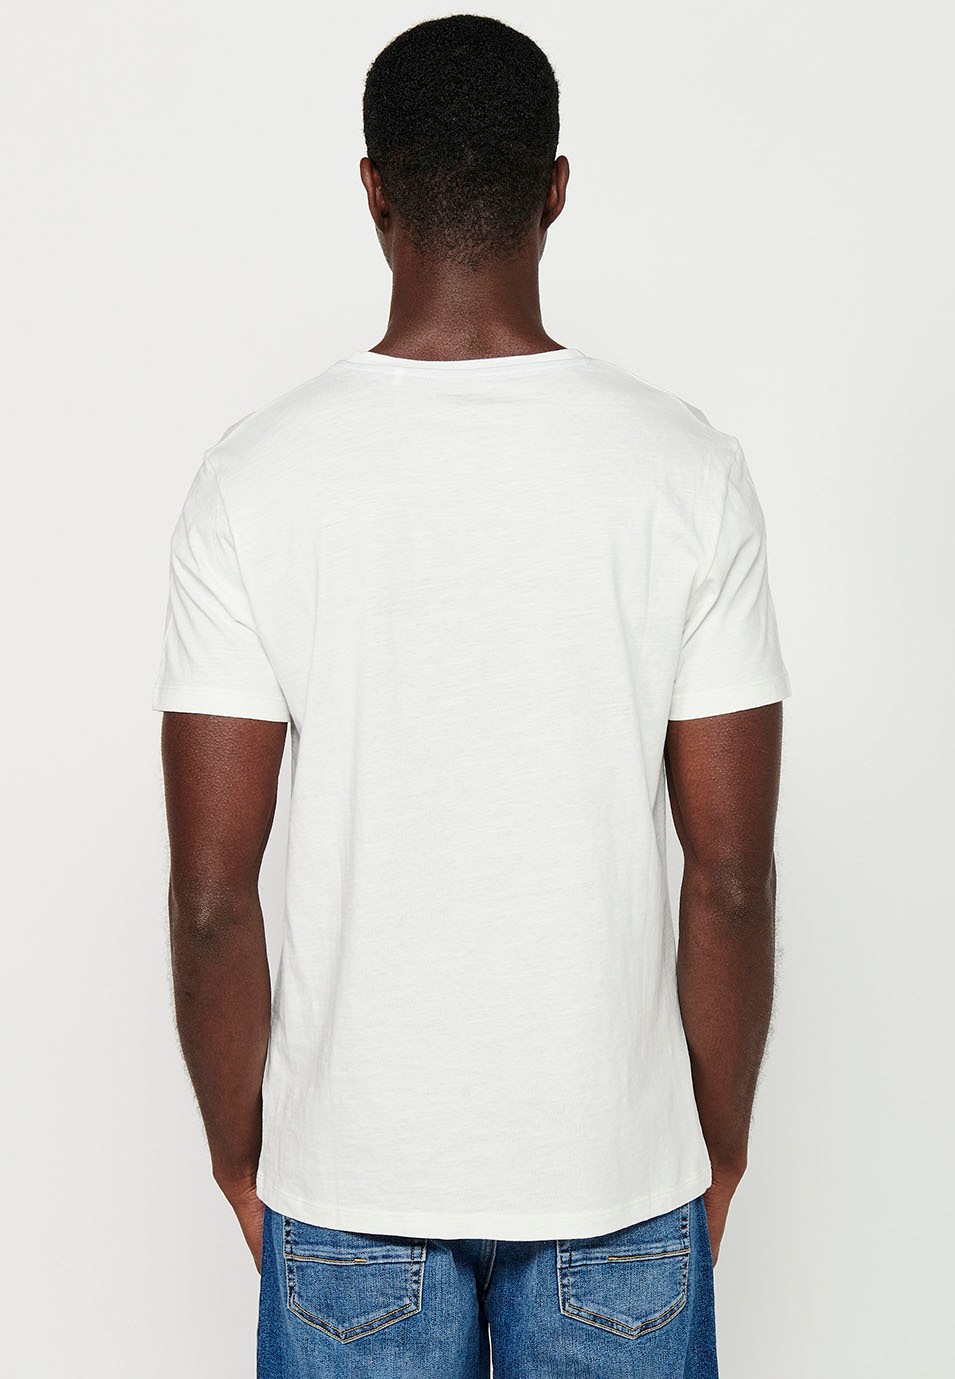 Herren-Kurzarm-T-Shirt aus ecrufarbener Baumwolle mit Rundhalsausschnitt und Print auf der Vorderseite 7